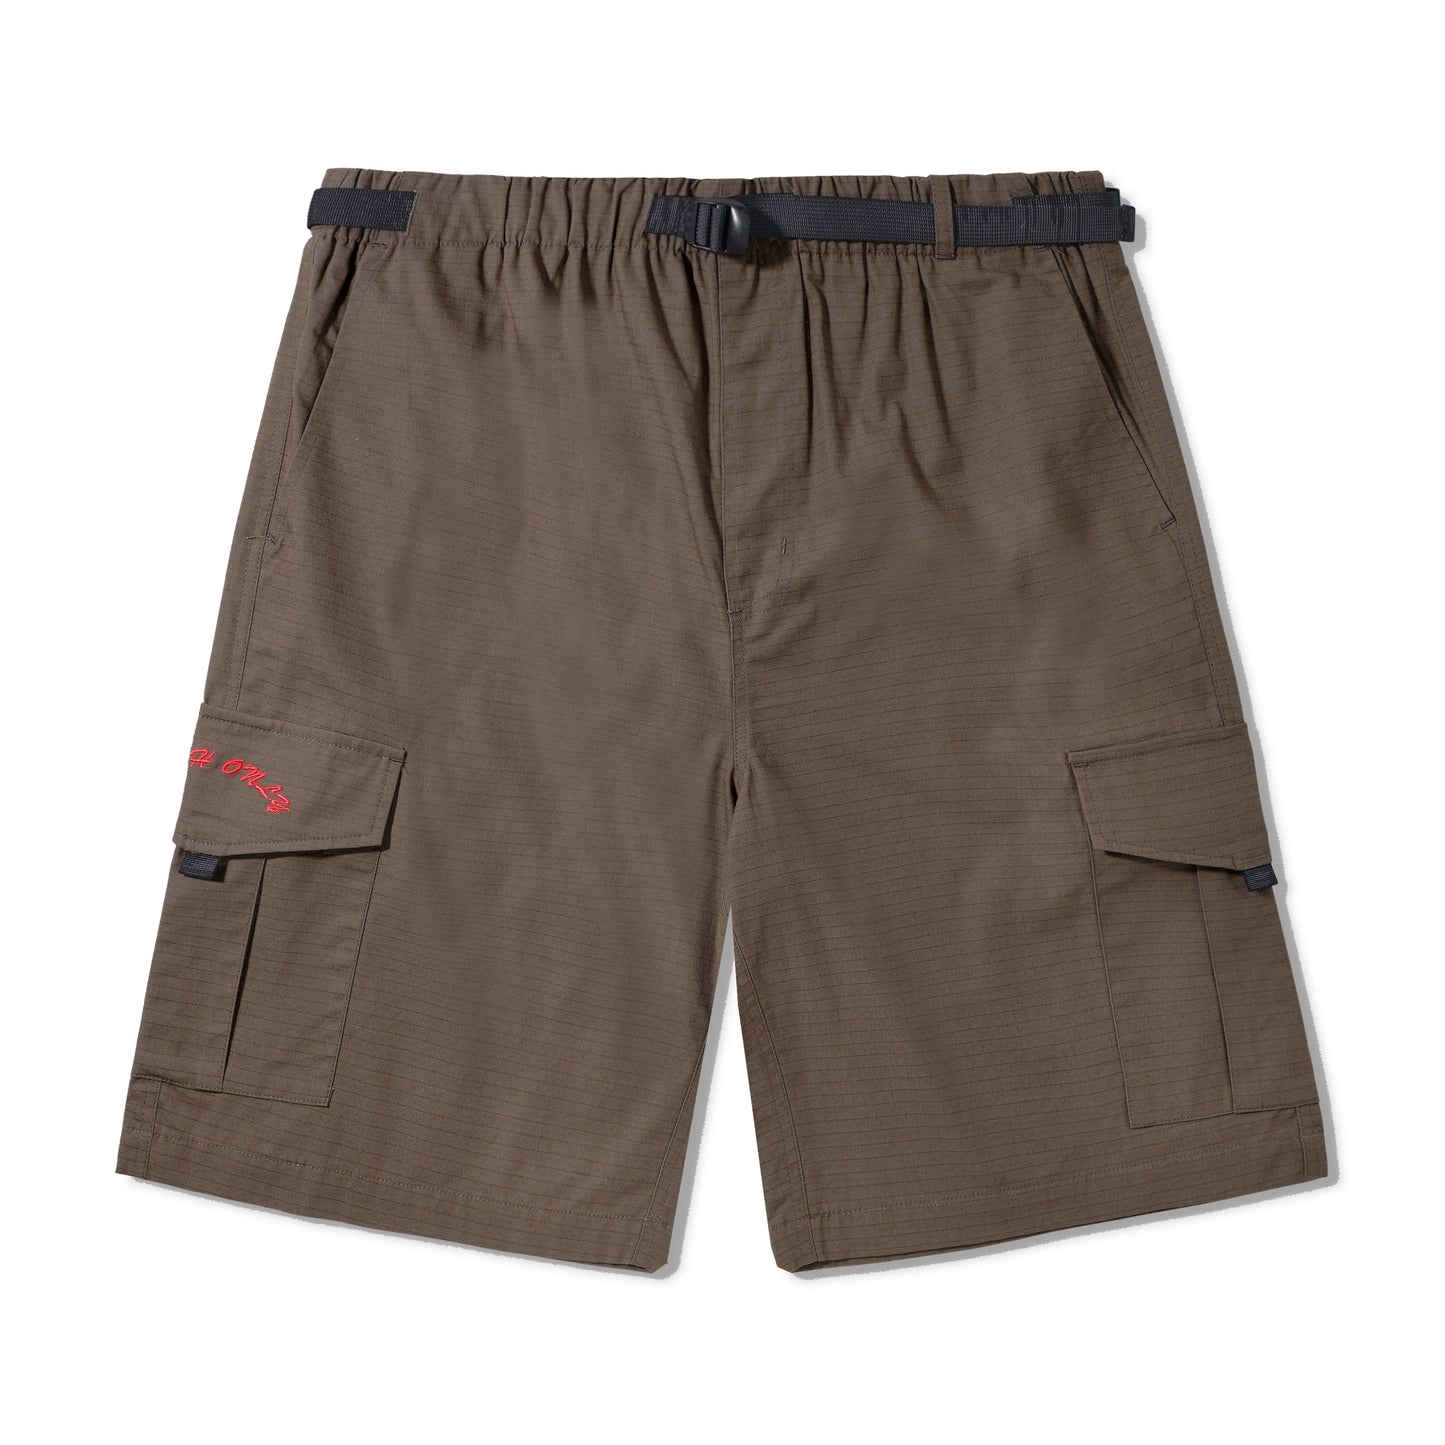 All Terrain Cargo Shorts - Brown